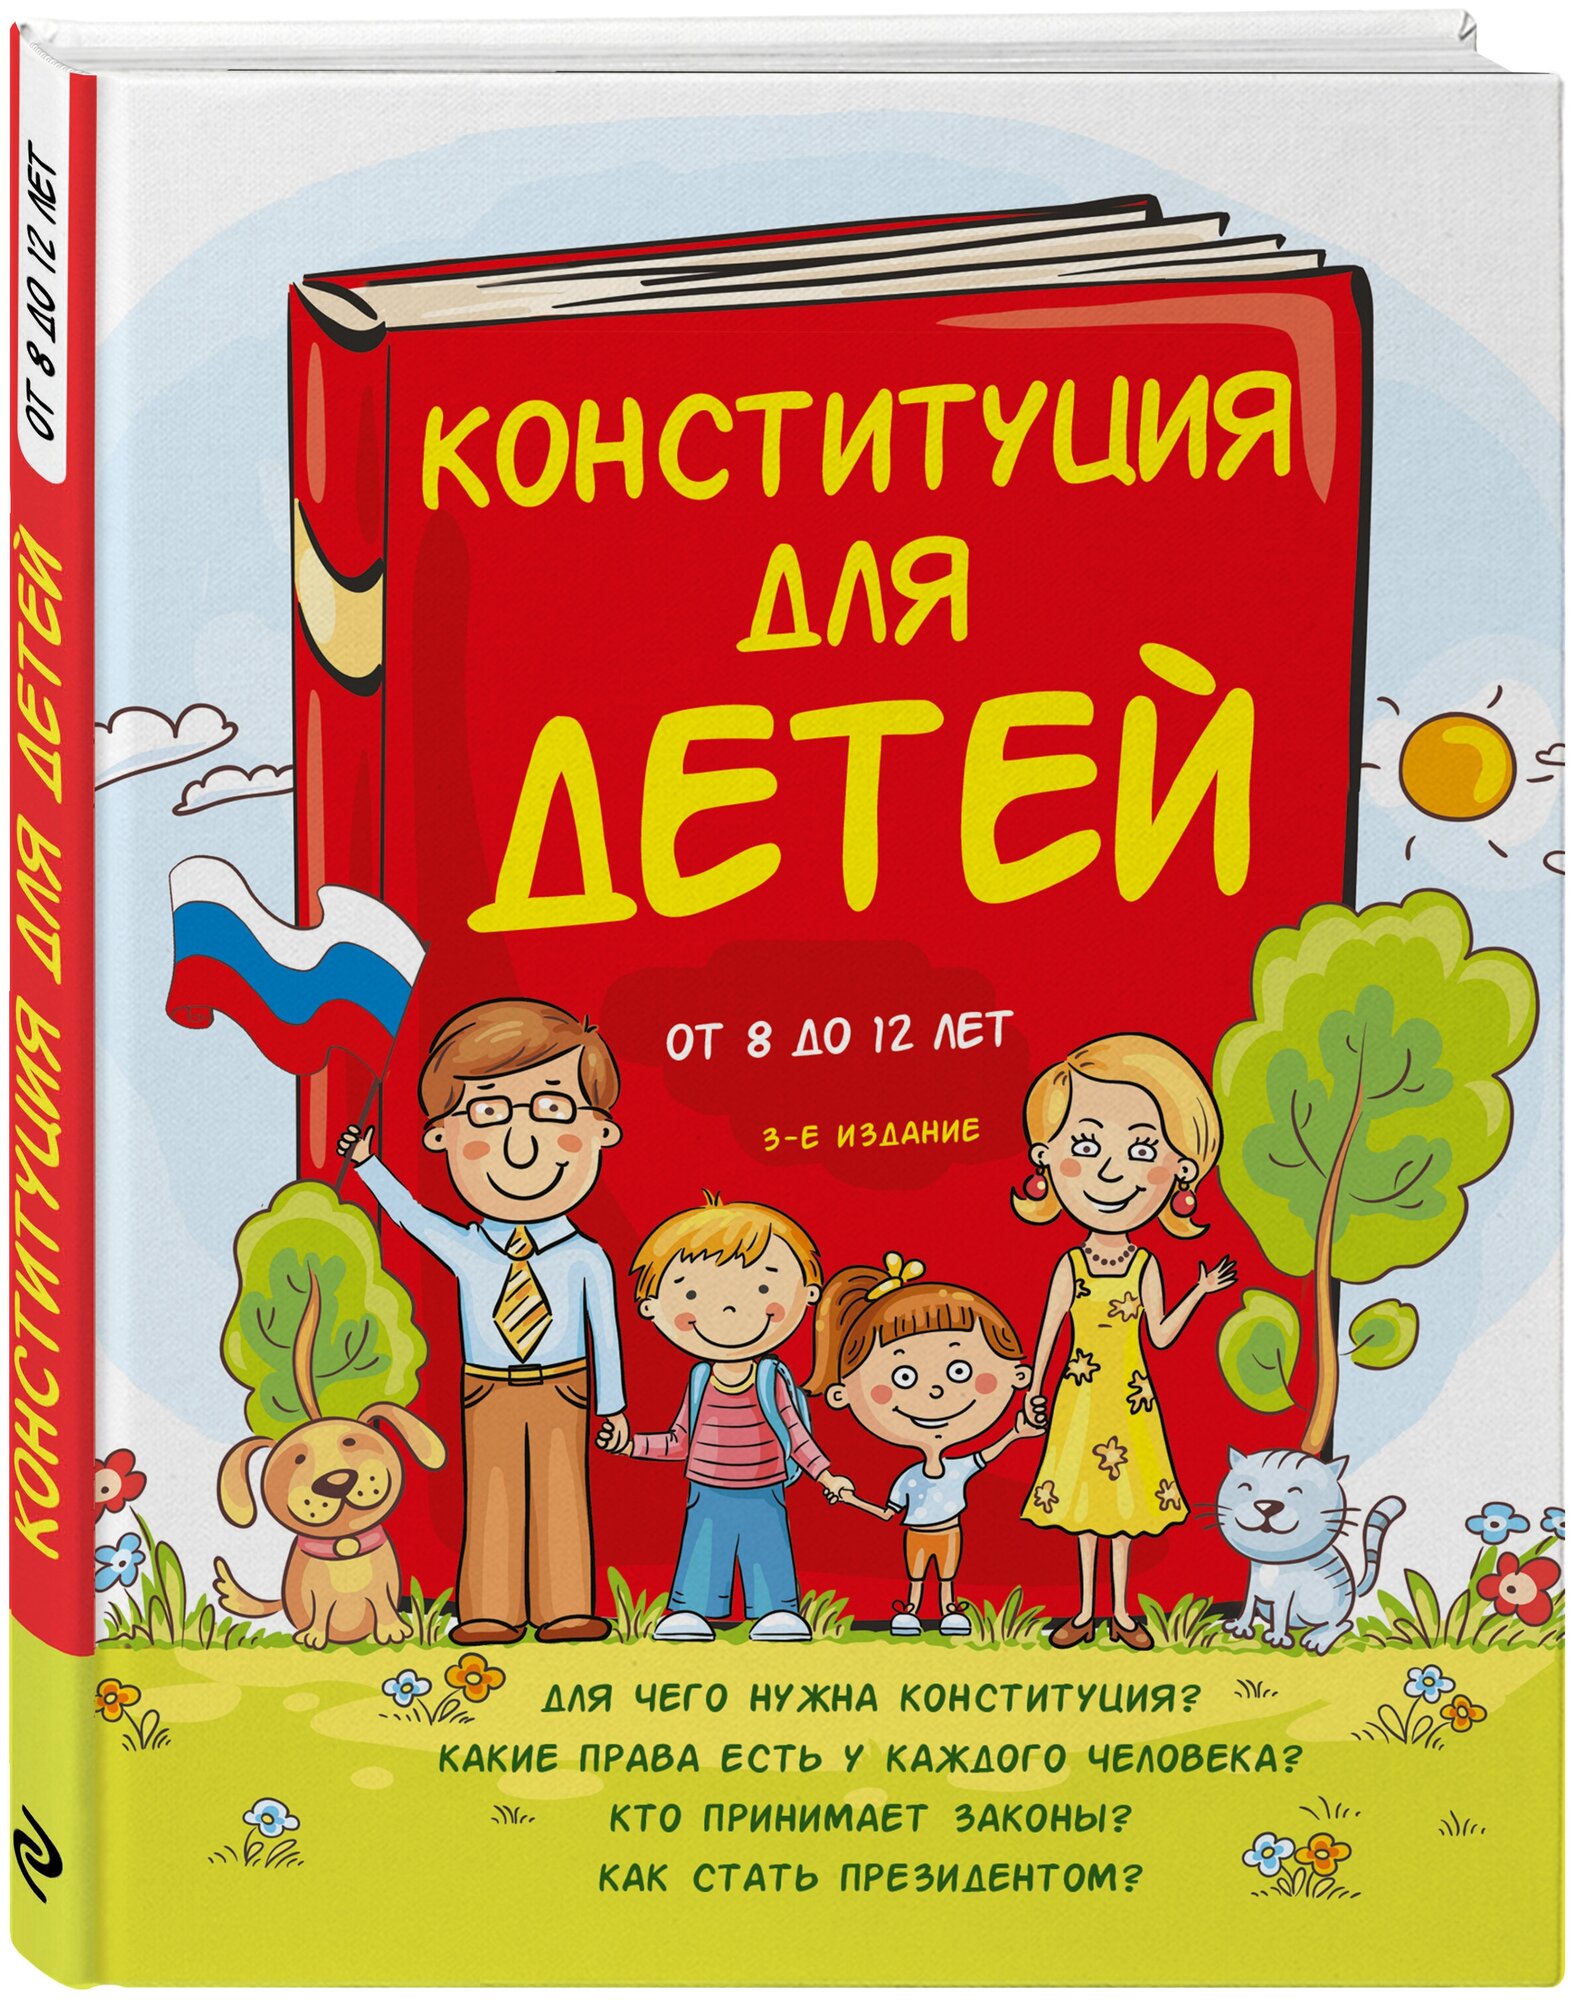 Серебренко А. Конституция для детей. 3-е издание